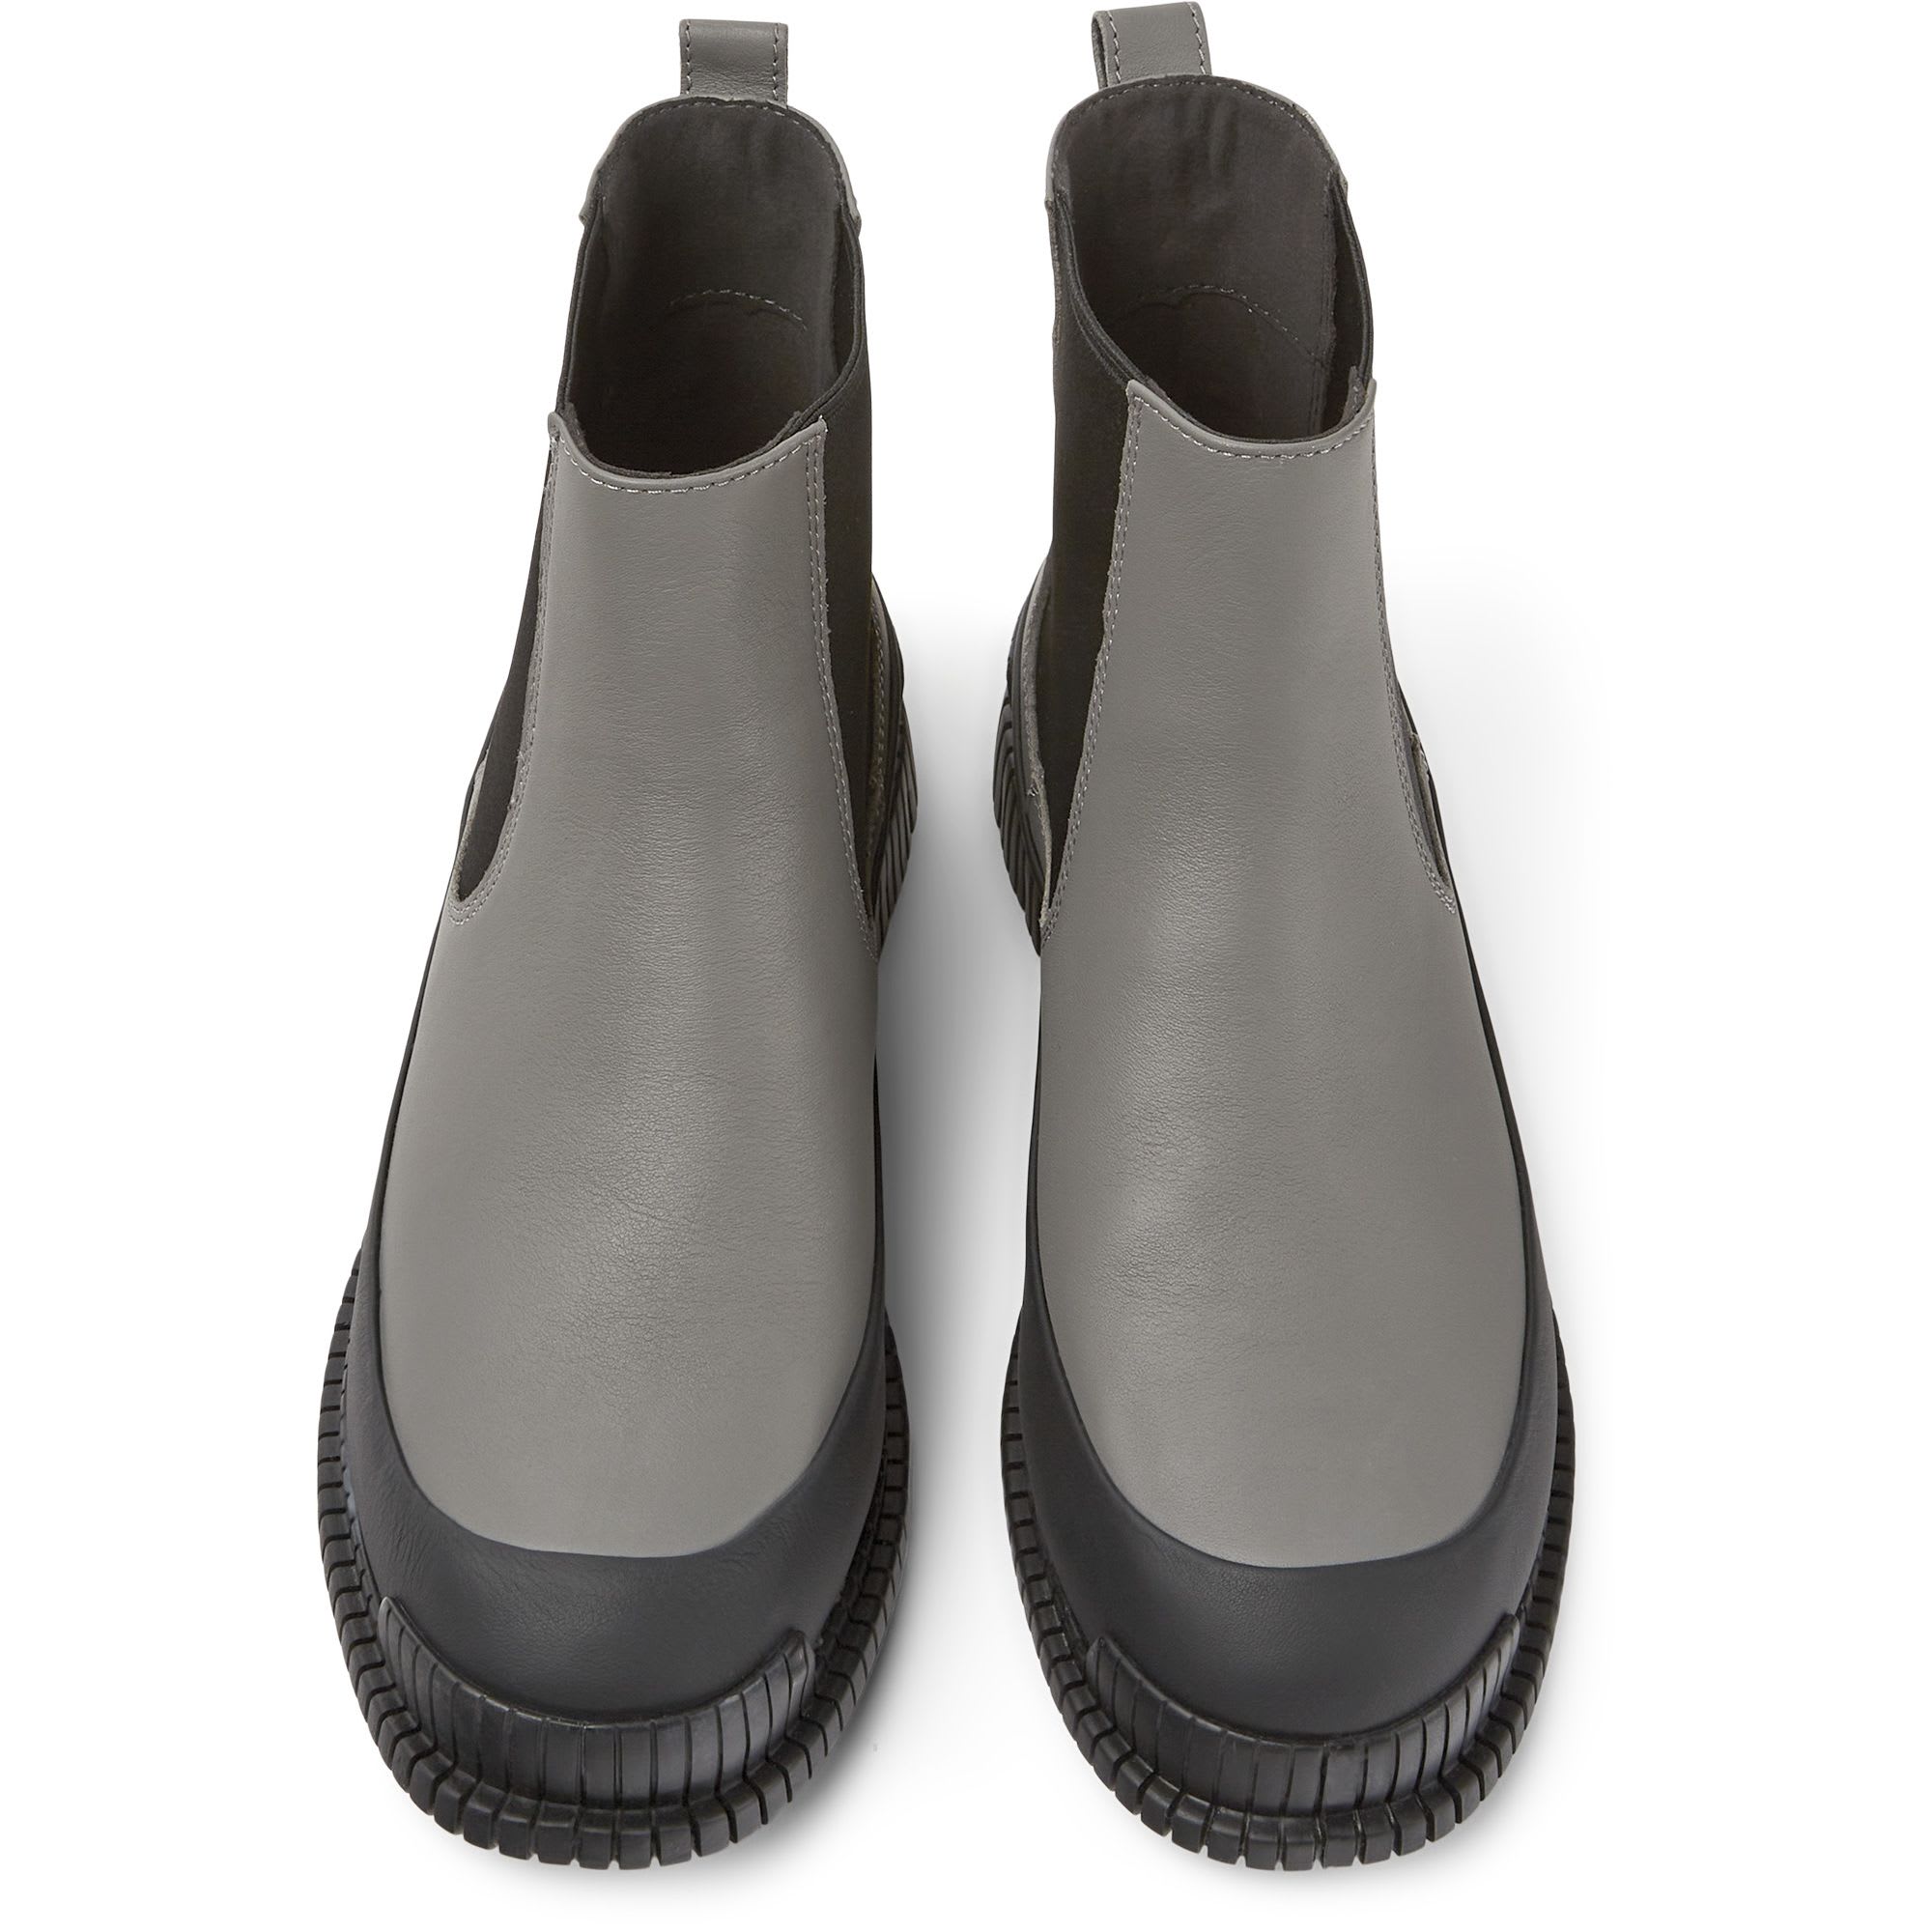 Ankle Boots Pix, dark grey